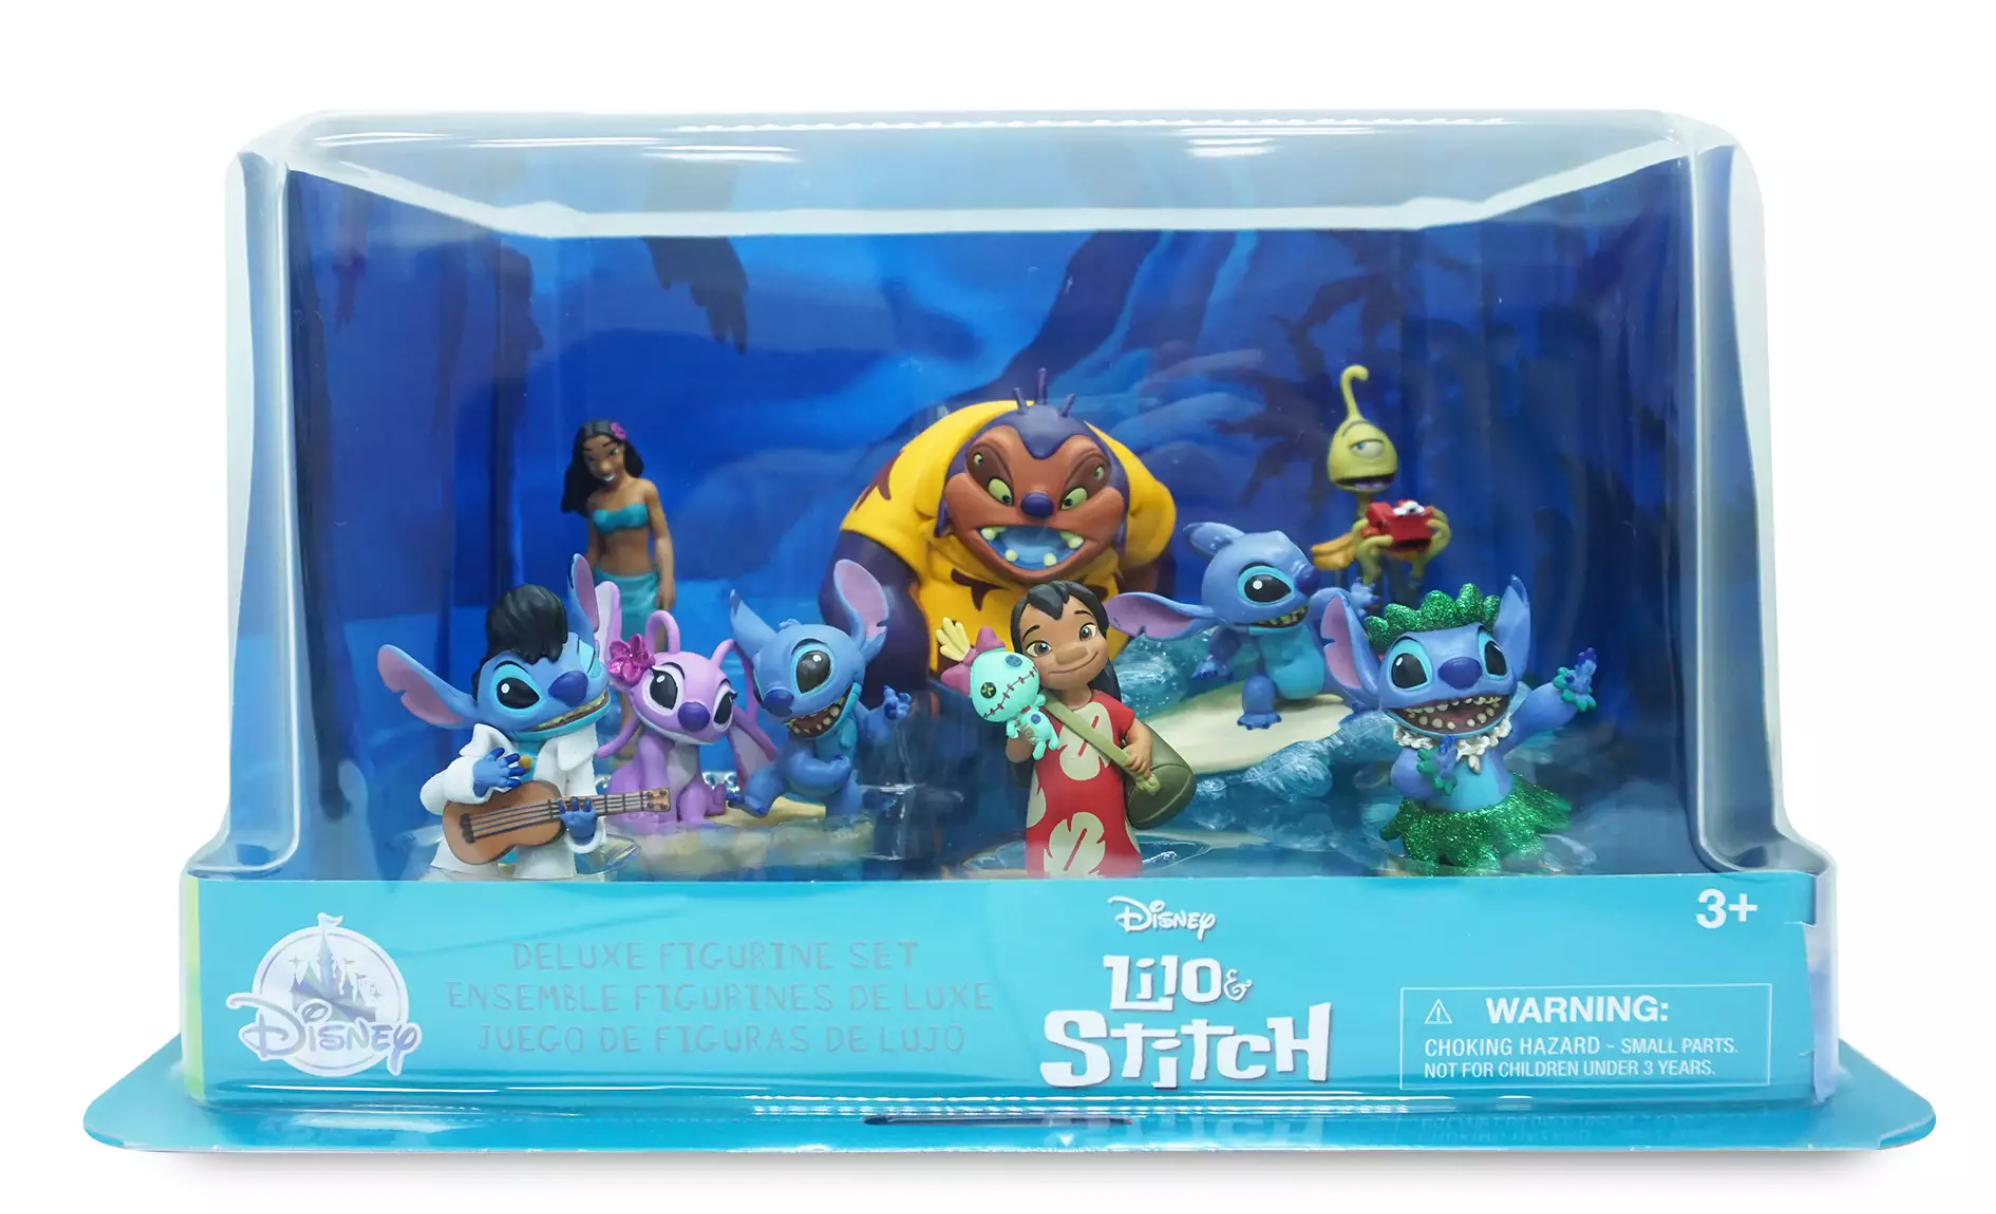 Disney Lilo And Stitch 4 Surfer Stitch Mini Pvc Figure Figurine Cake  Topper Collectible Toy 